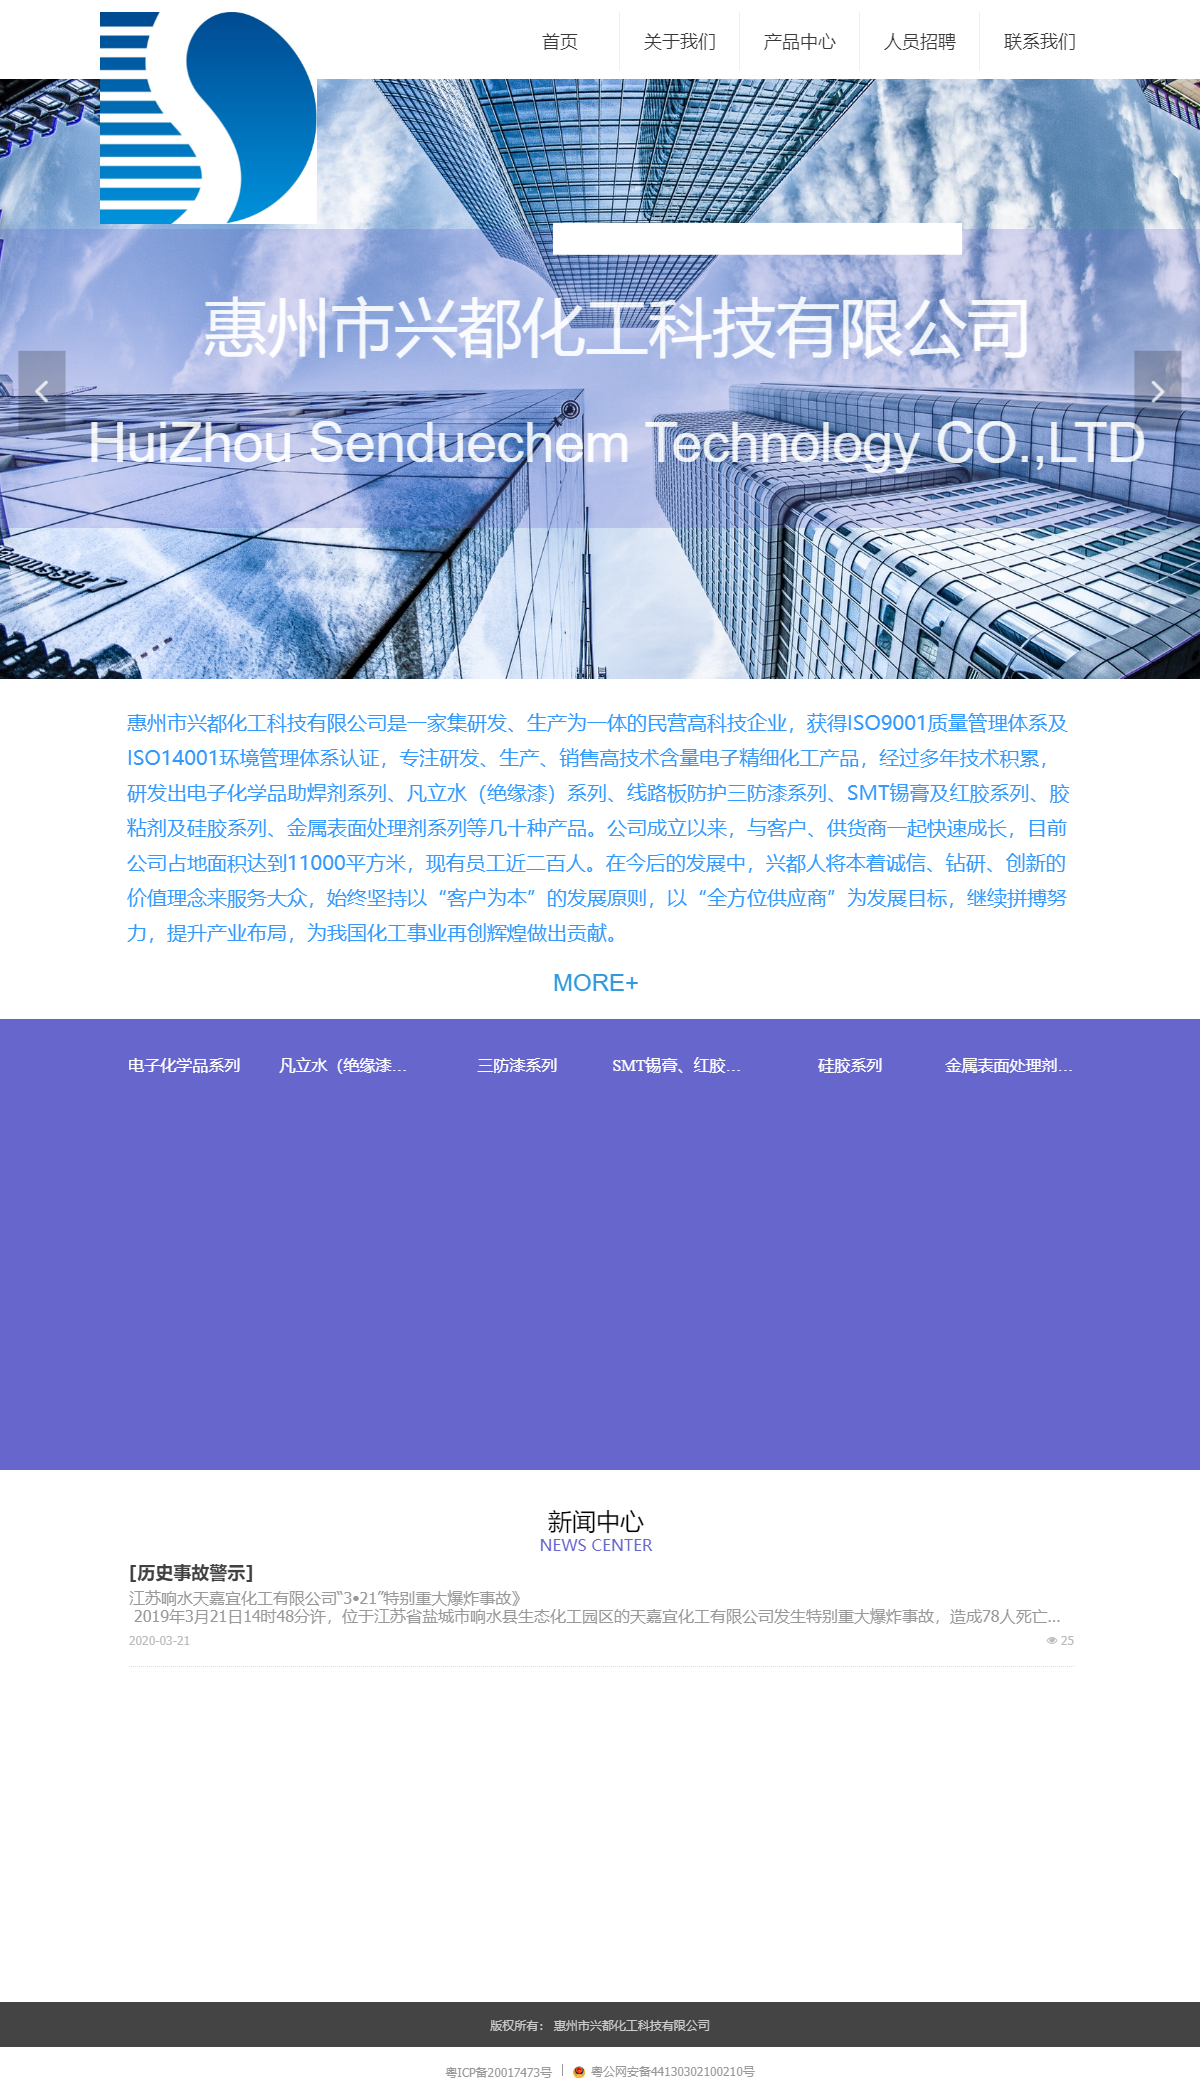 惠州市兴都化工科技有限公司网站案例